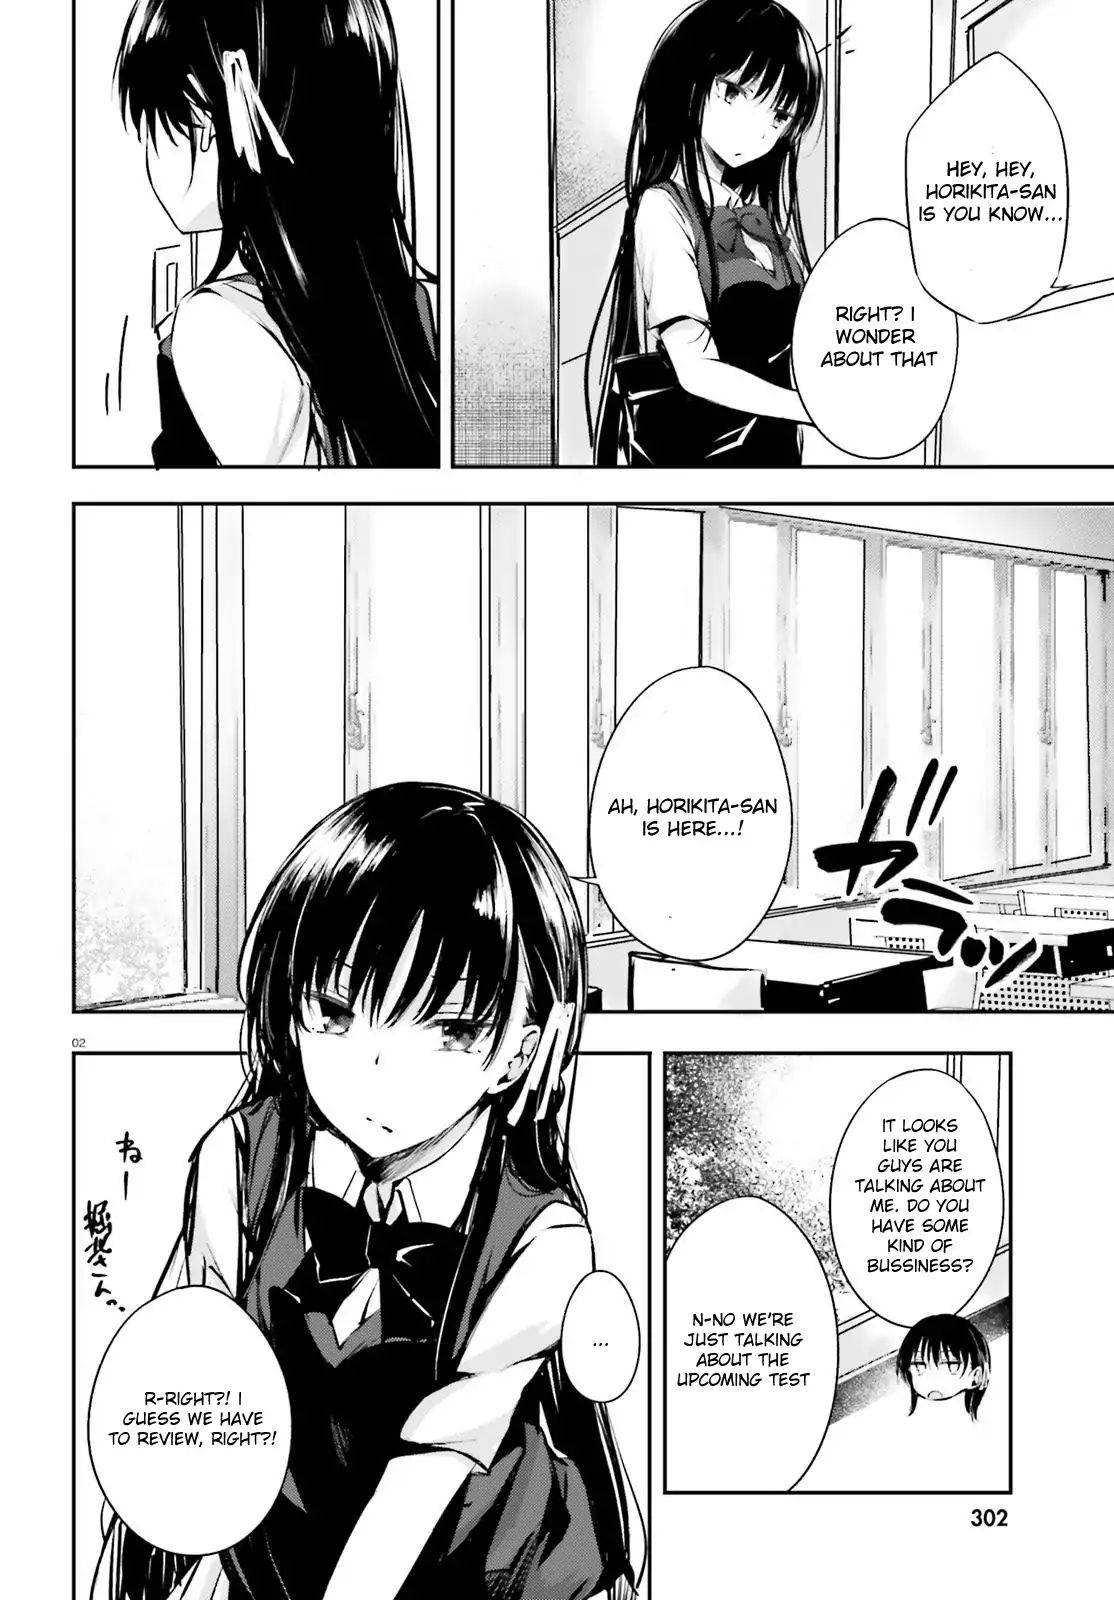 Read Manga Classroom of the Elite √Horikita - Chapter 6